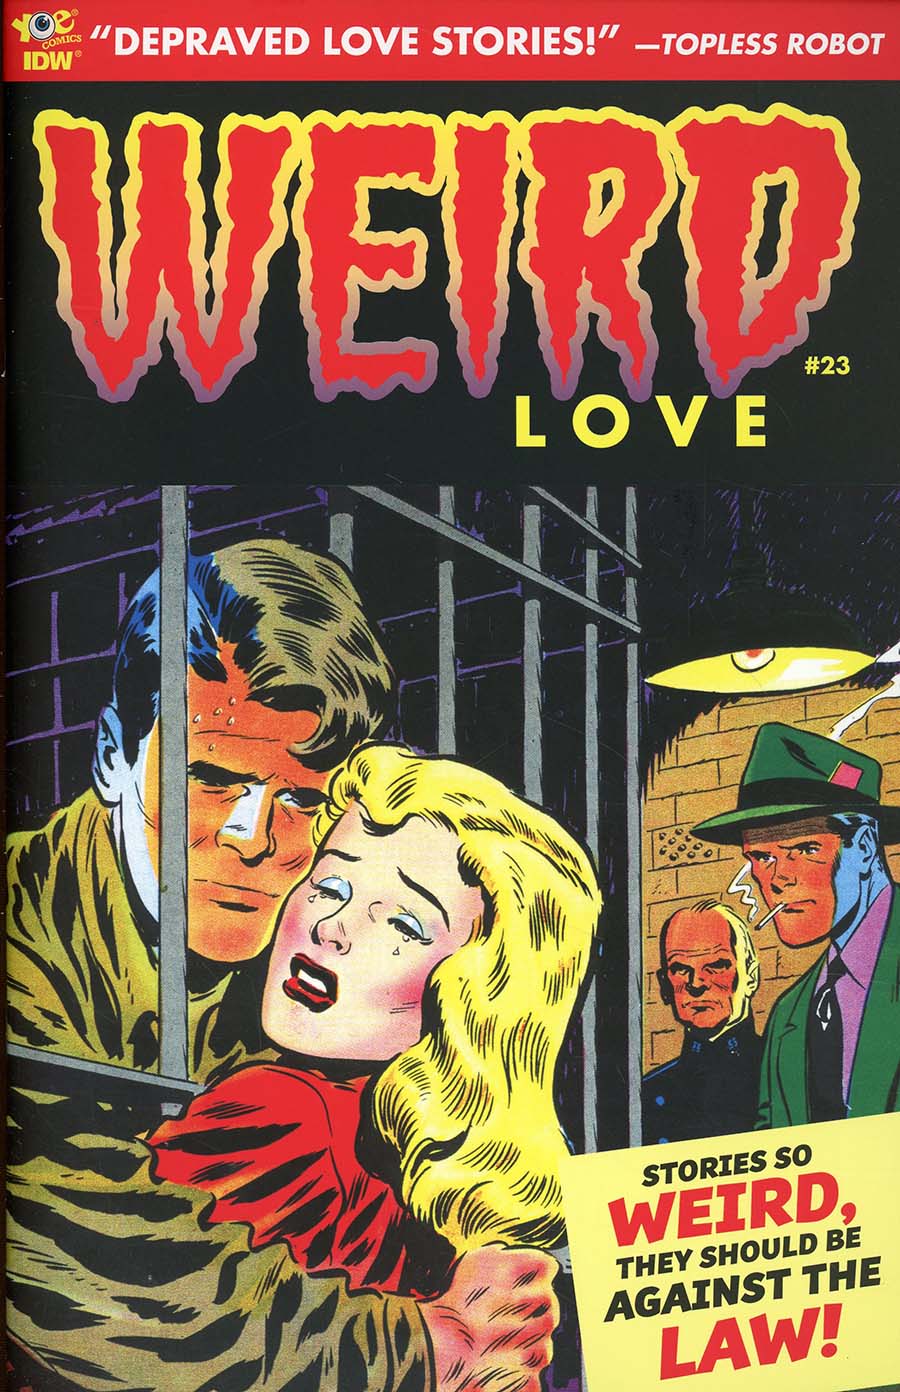 Weird Love #23